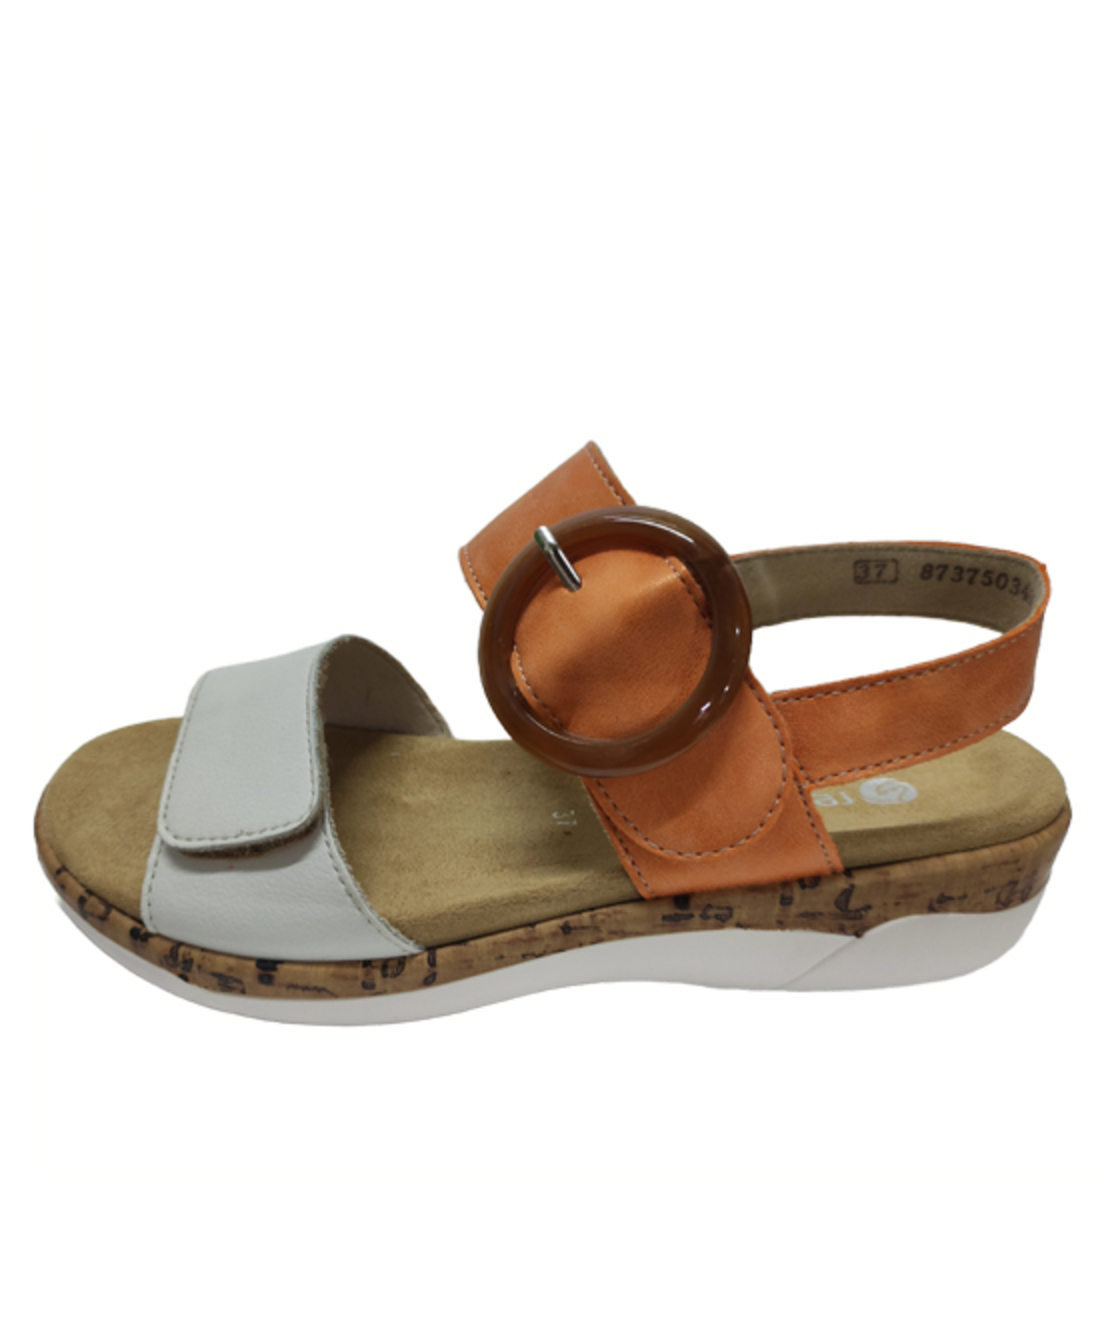 Remonte Sandals - R6853-38 - Women